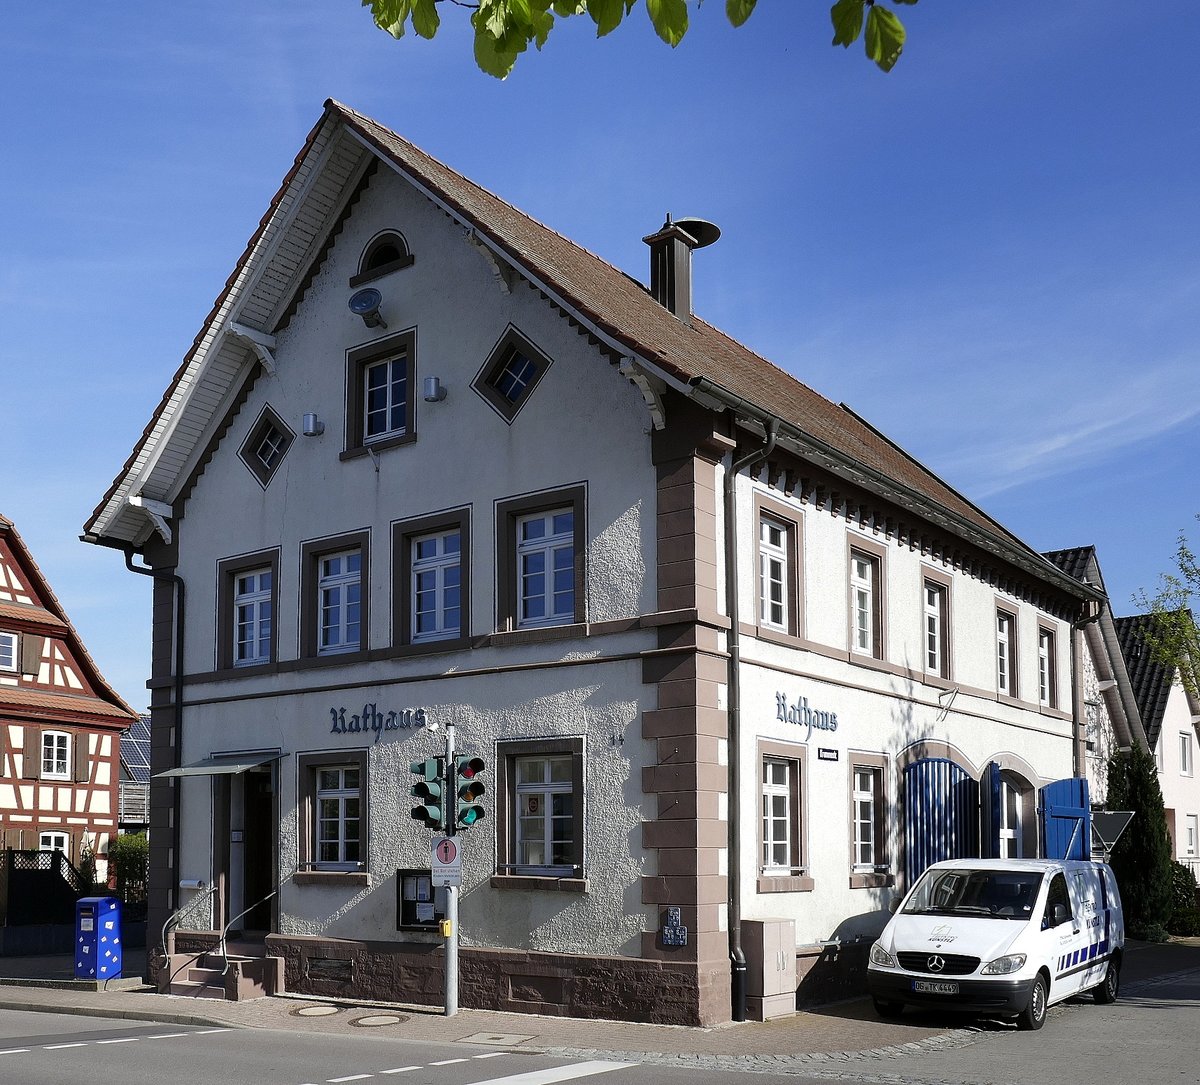 Allmannsweier, OT der Gemeinde Schwanau in der Ortenau, das Alte Rathaus des ca.1600 Einwohner zhlenden Ortes, April 2020